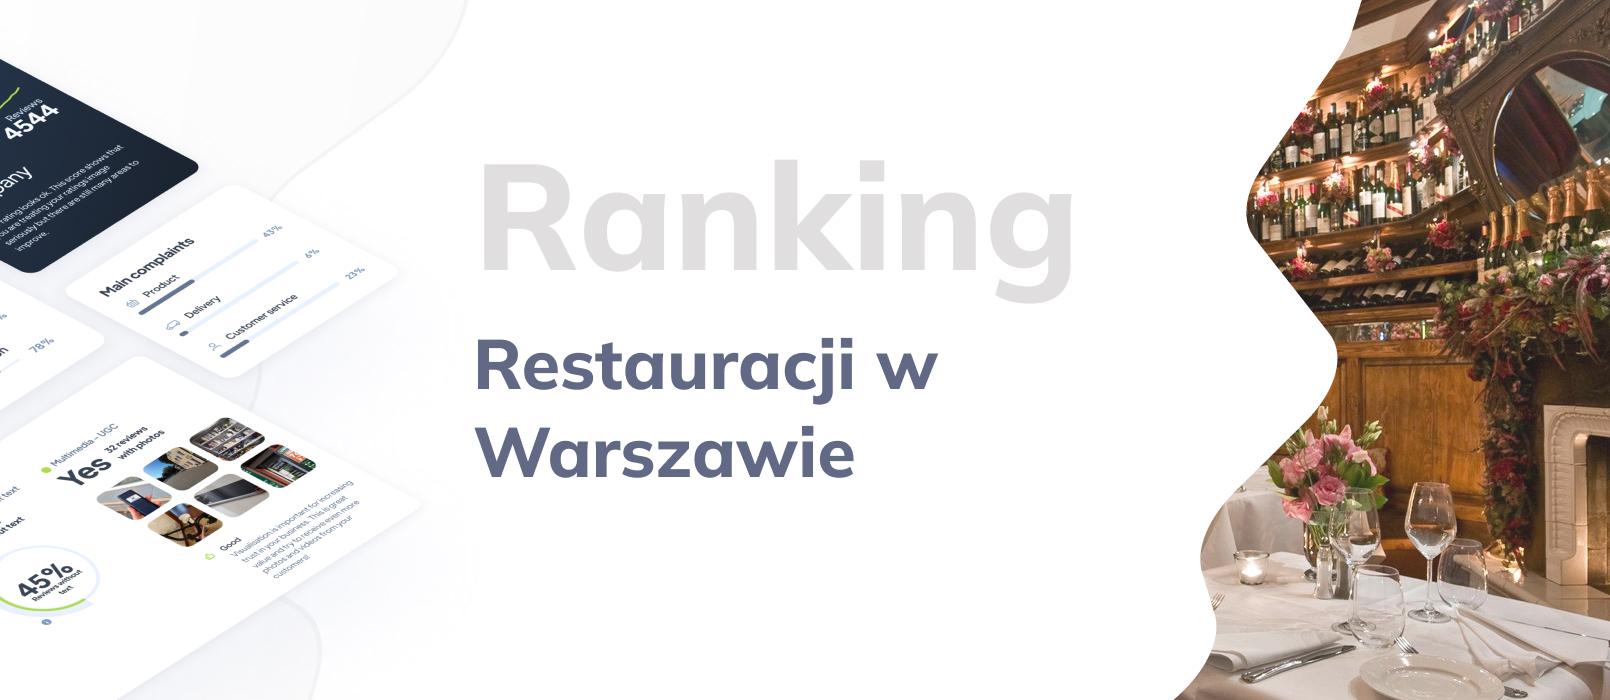 TOP 10: Ranking Restauracji w Warszawie